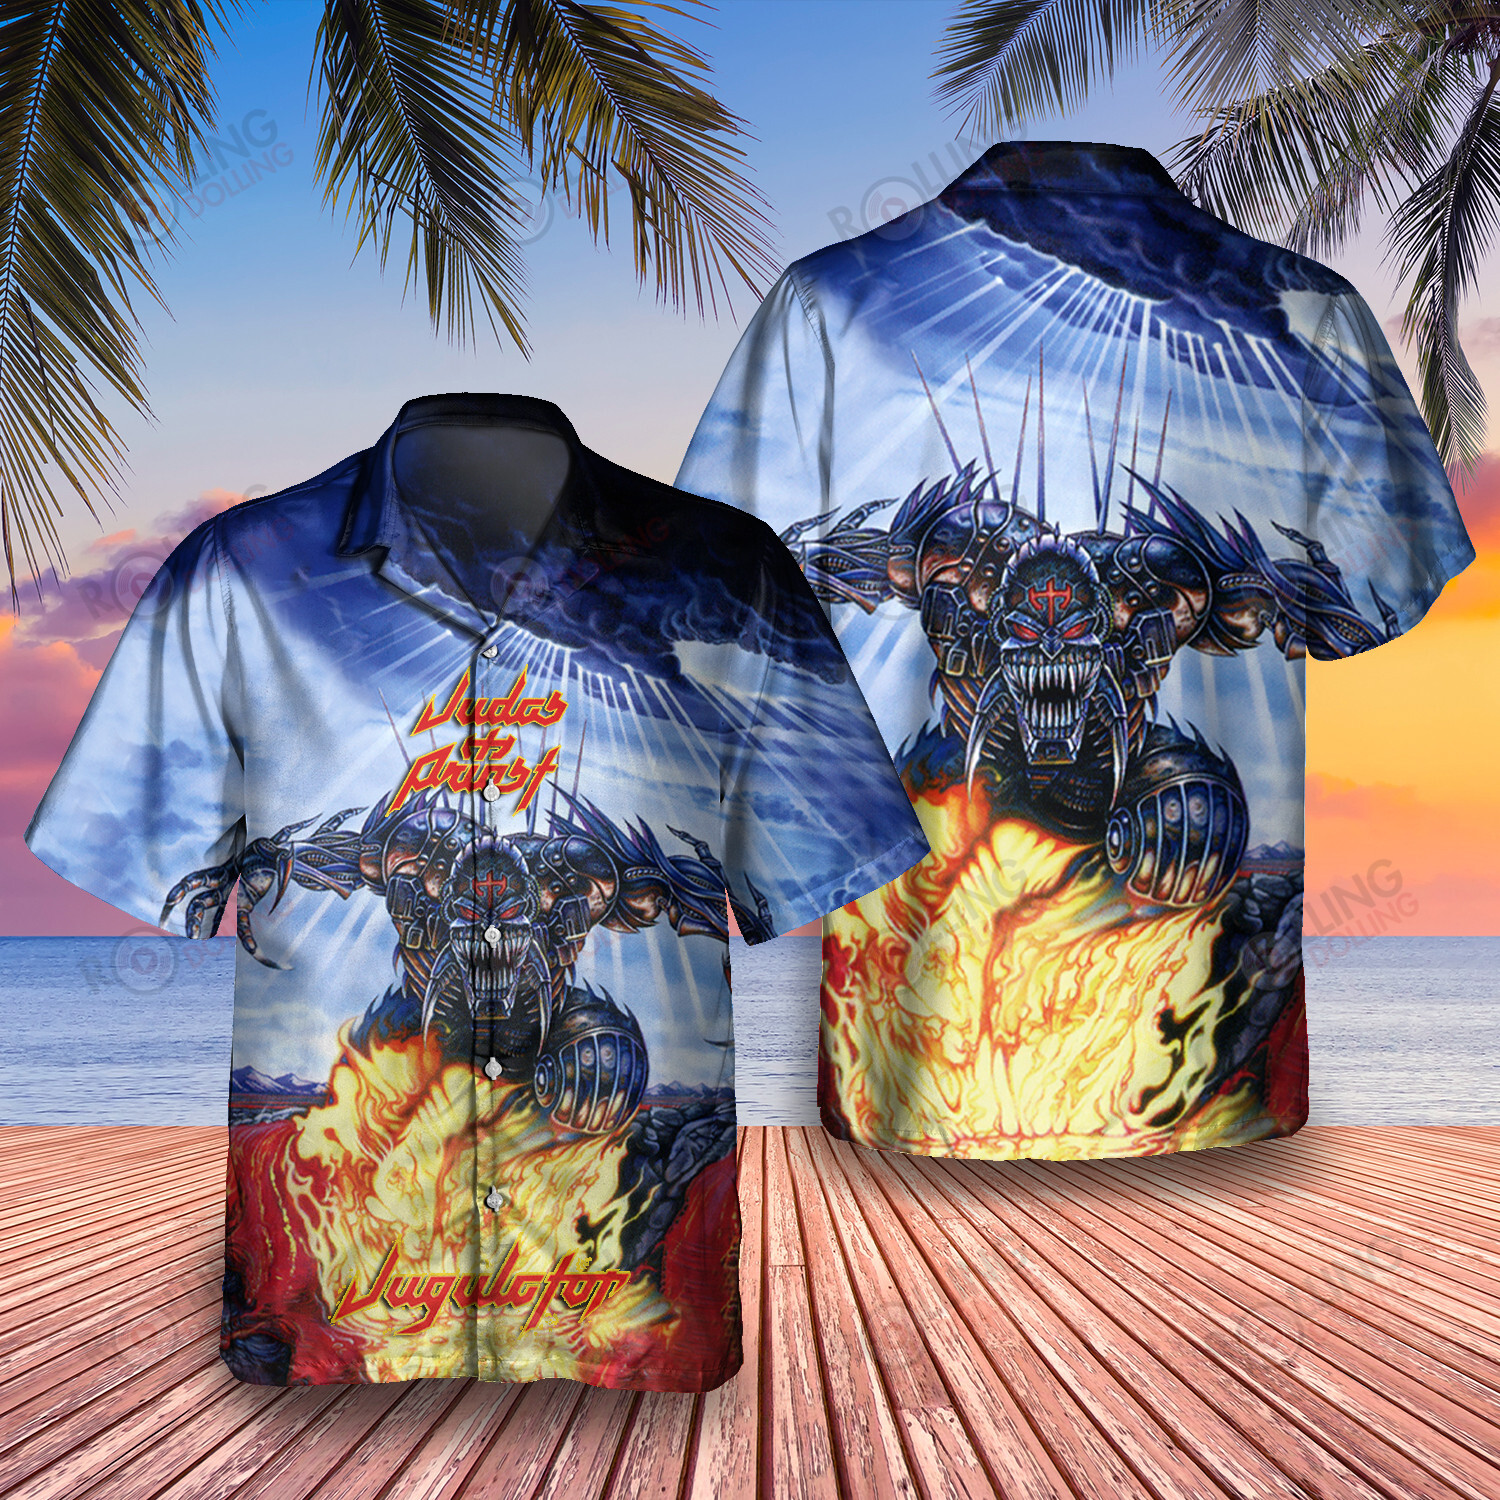 HOT Judas Priest Jugulator 2 Album Tropical Shirt2